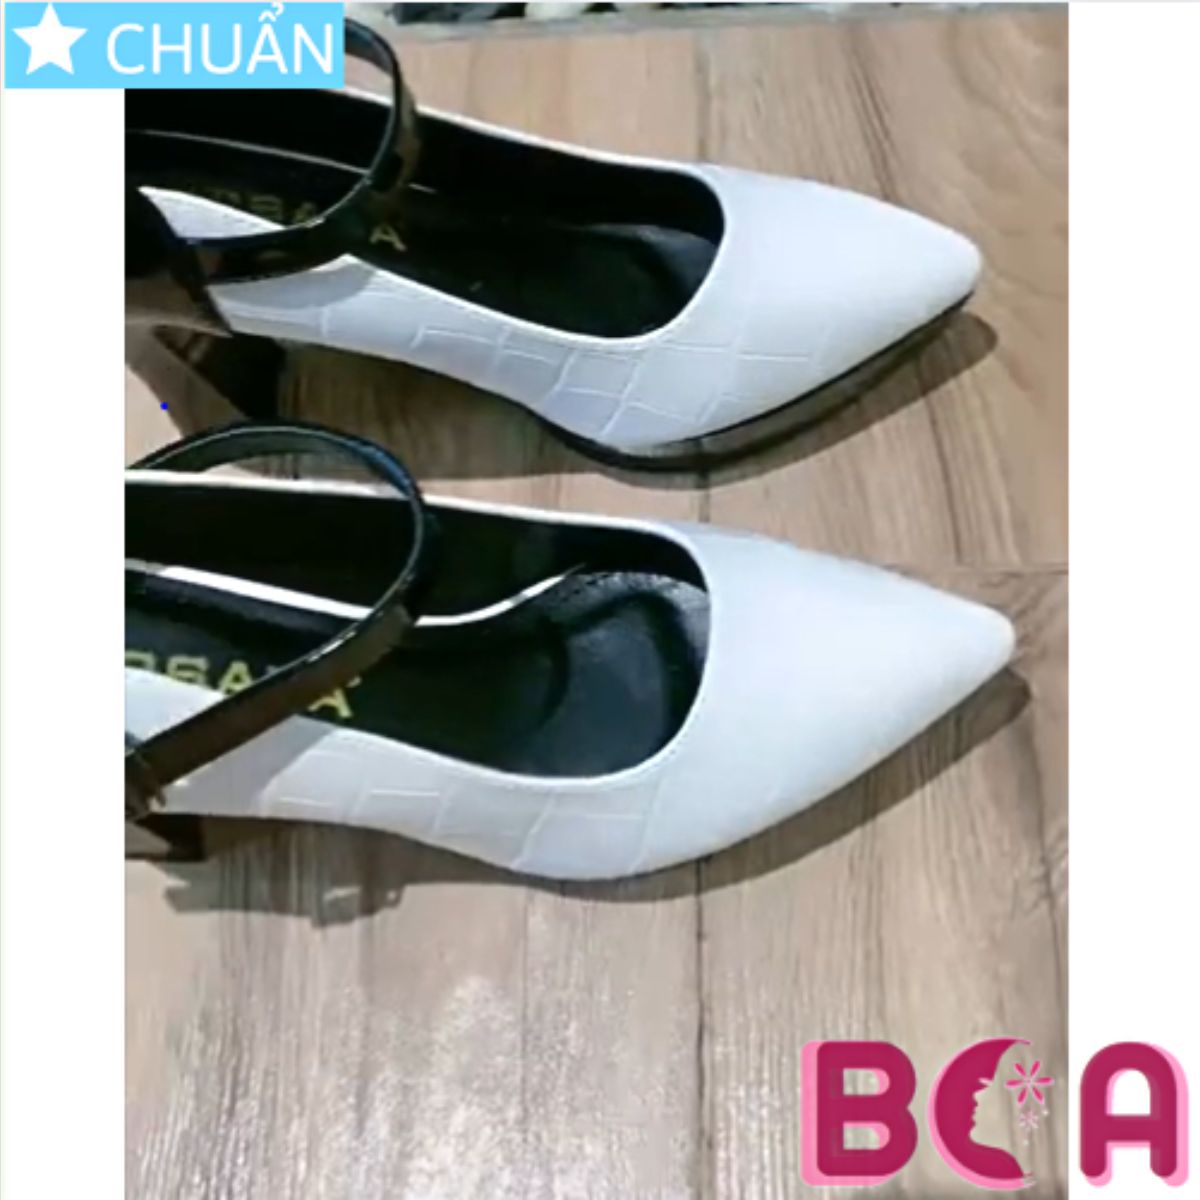 Giày cao gót nữ 8p RO611 mặt vân nổi, phối hợp giữa đen và trắng tạo nên phong cách cá tính, năng động và rất thời trang